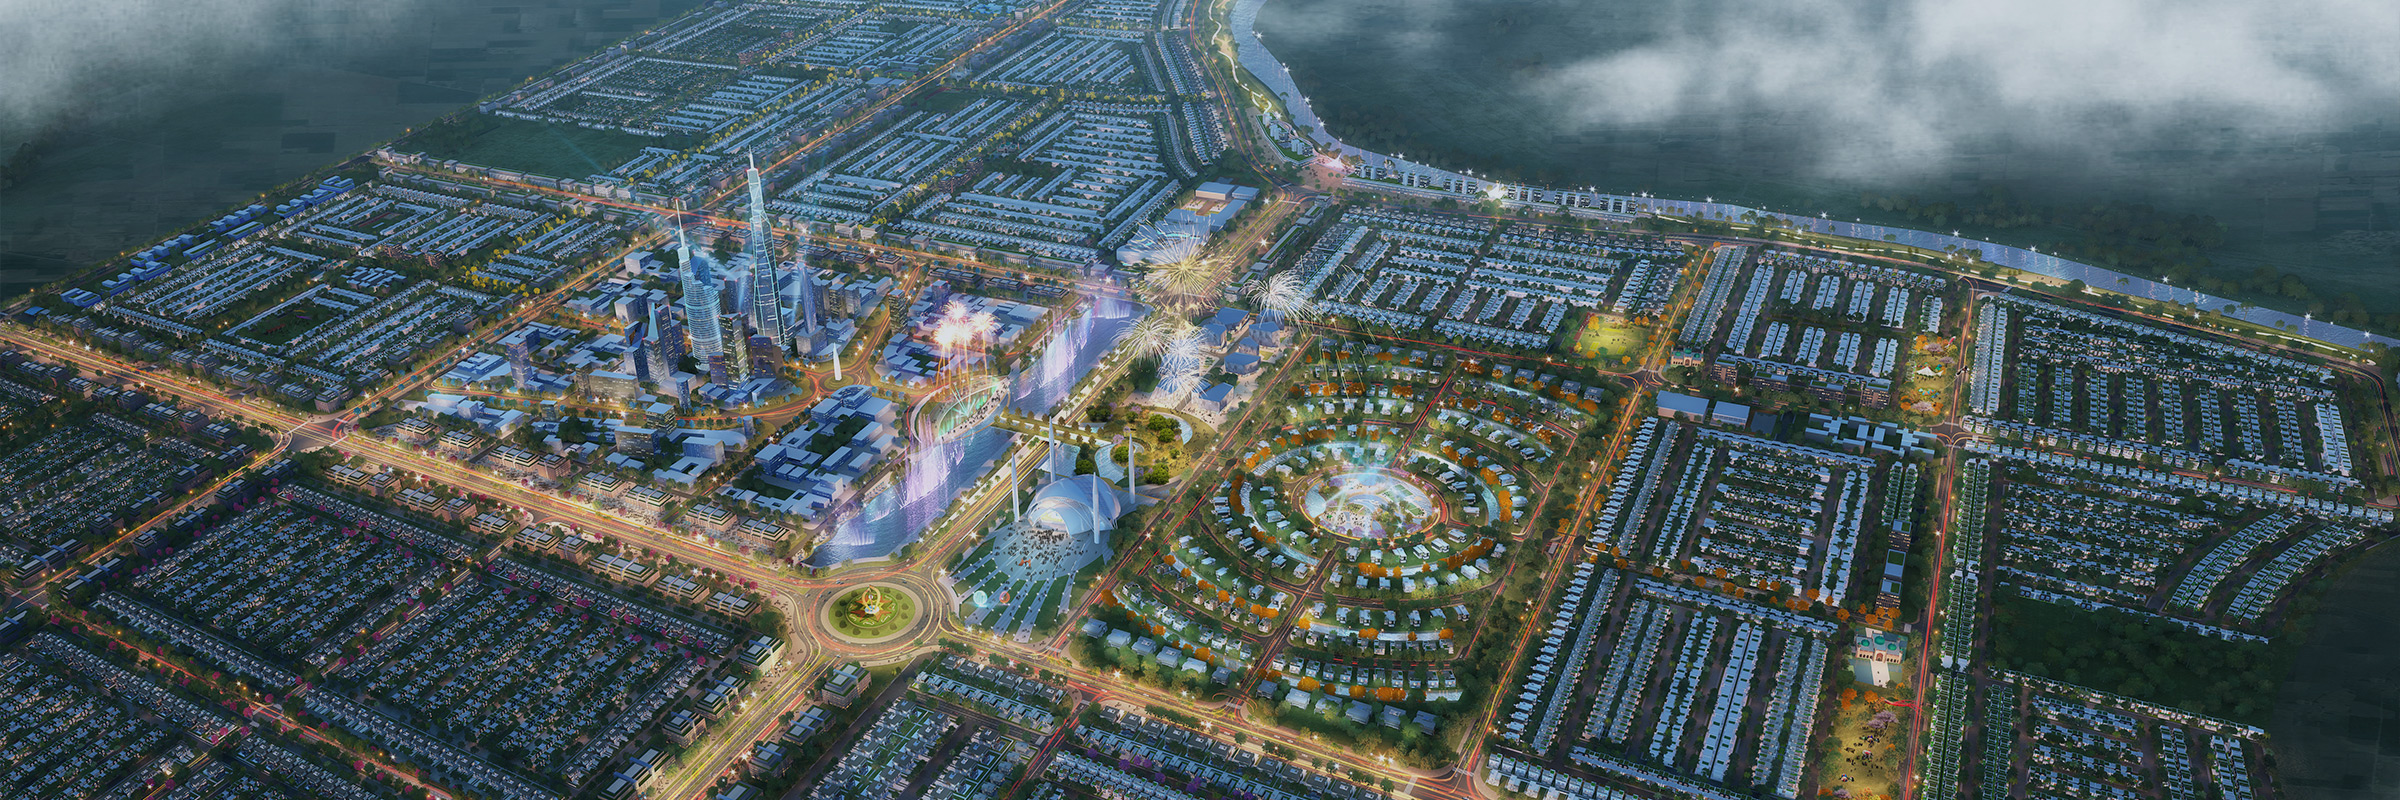 Al Noor Orchard, West Marina masterplan, Pakistan